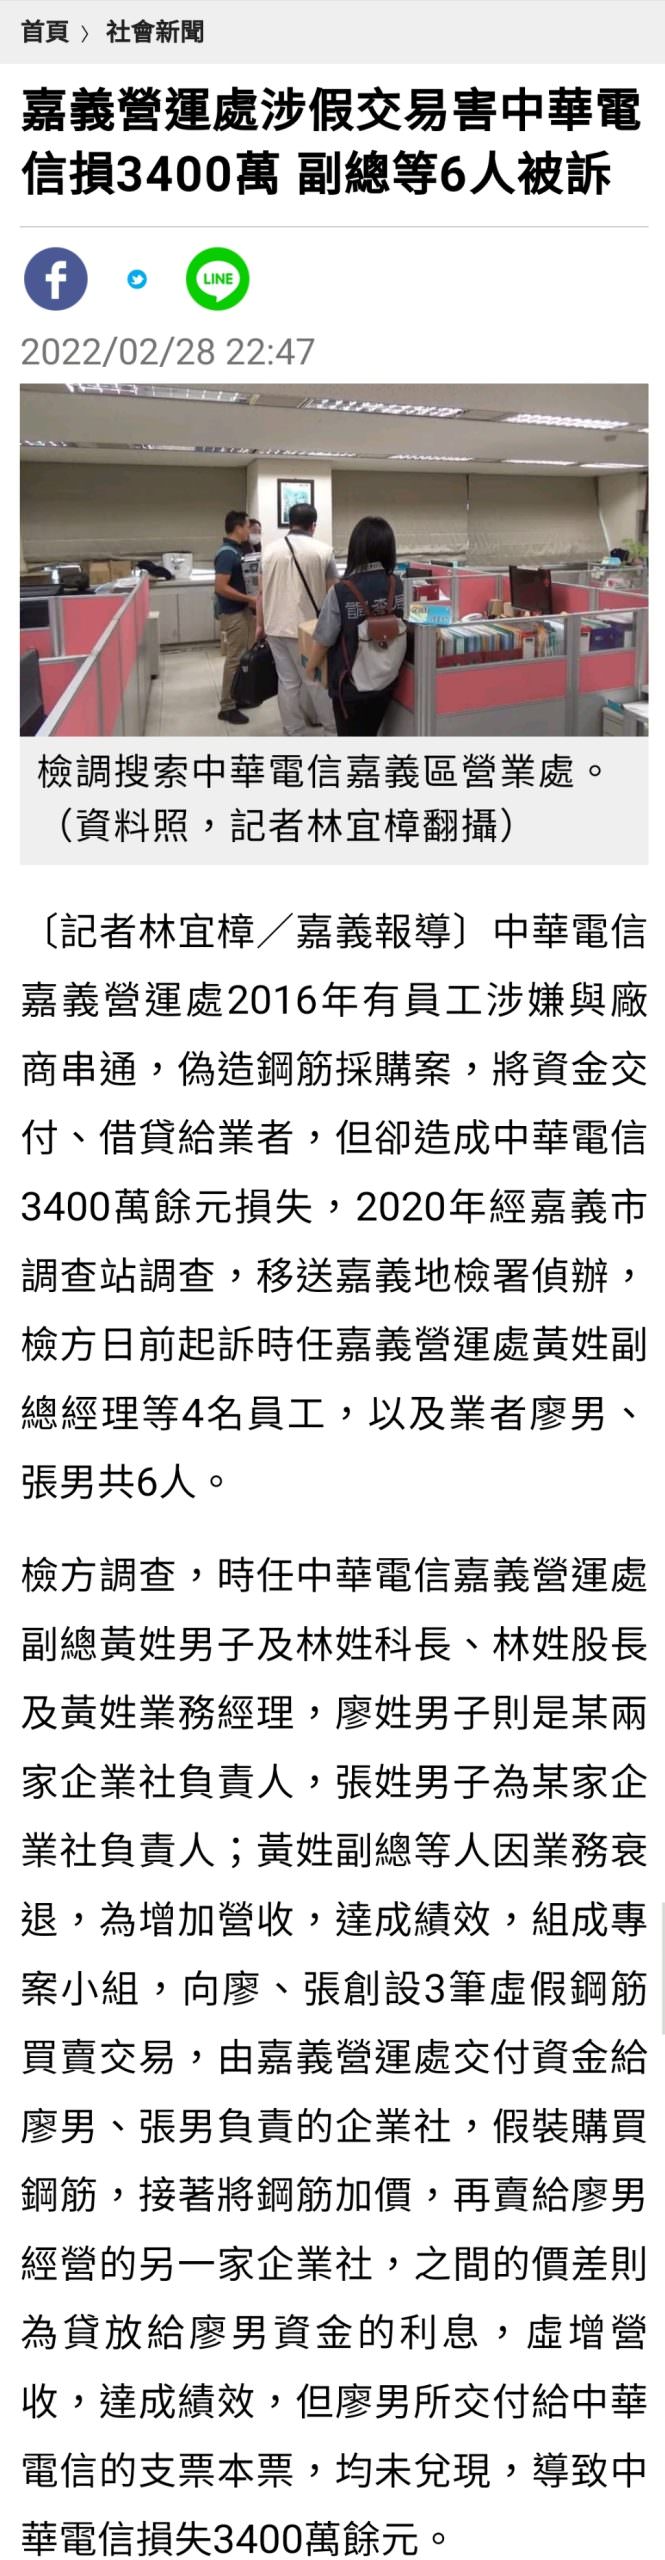 【新聞】2022中華電信弊案！拼業績偷放貸！ 虧損破億元